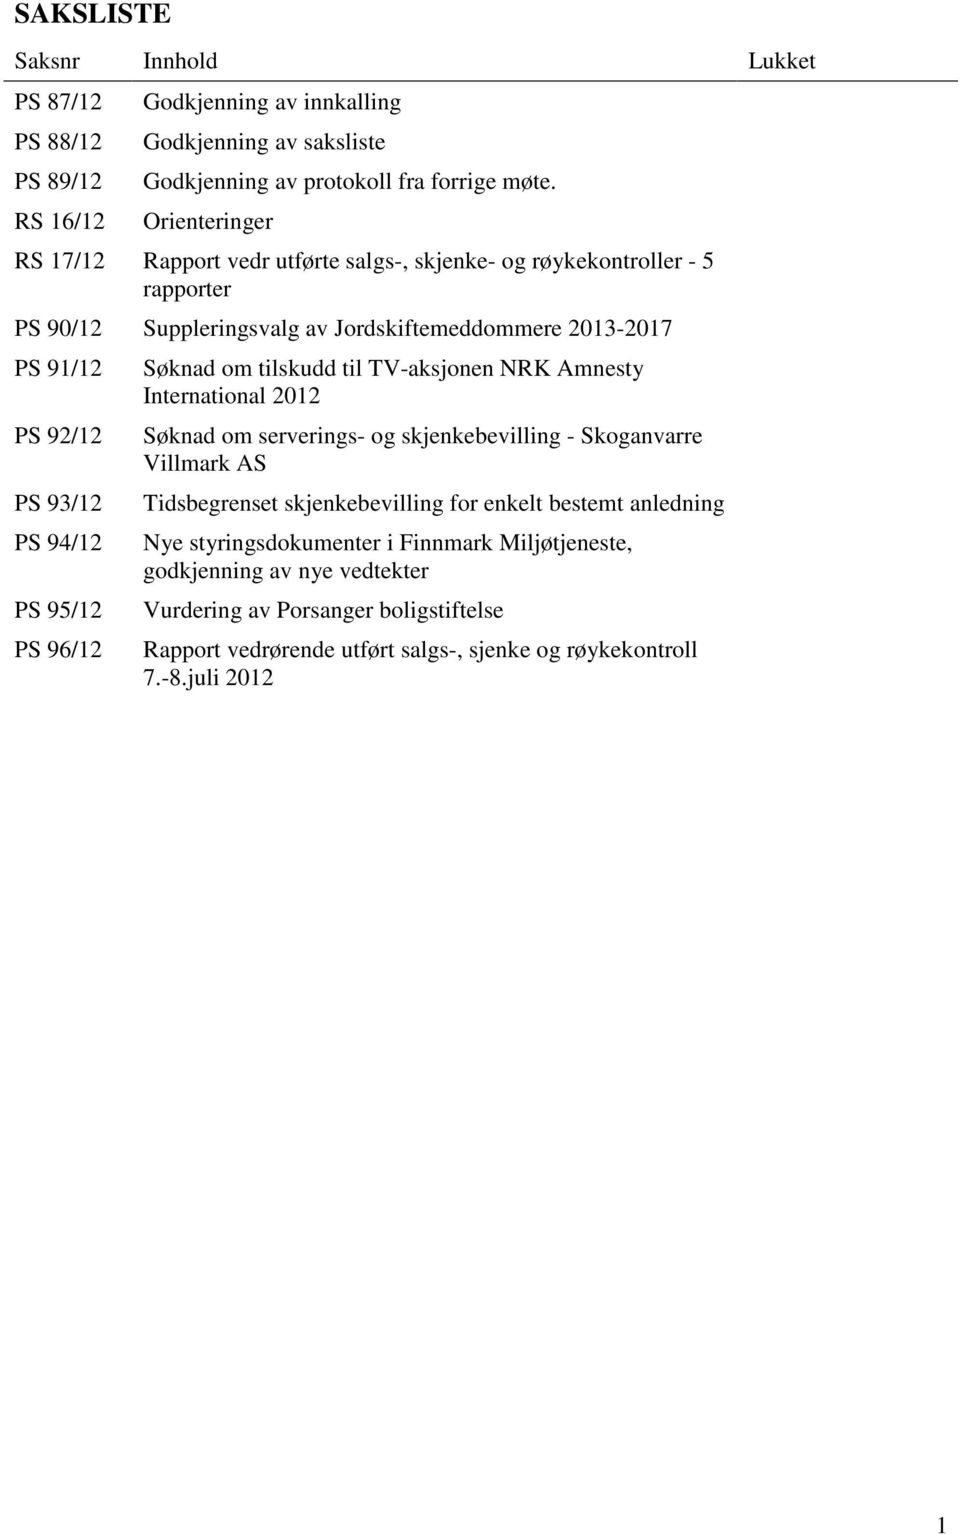 PS 95/12 PS 96/12 Søknad om tilskudd til TV-aksjonen NRK Amnesty International 2012 Søknad om serverings- og skjenkebevilling - Skoganvarre Villmark AS Tidsbegrenset skjenkebevilling for